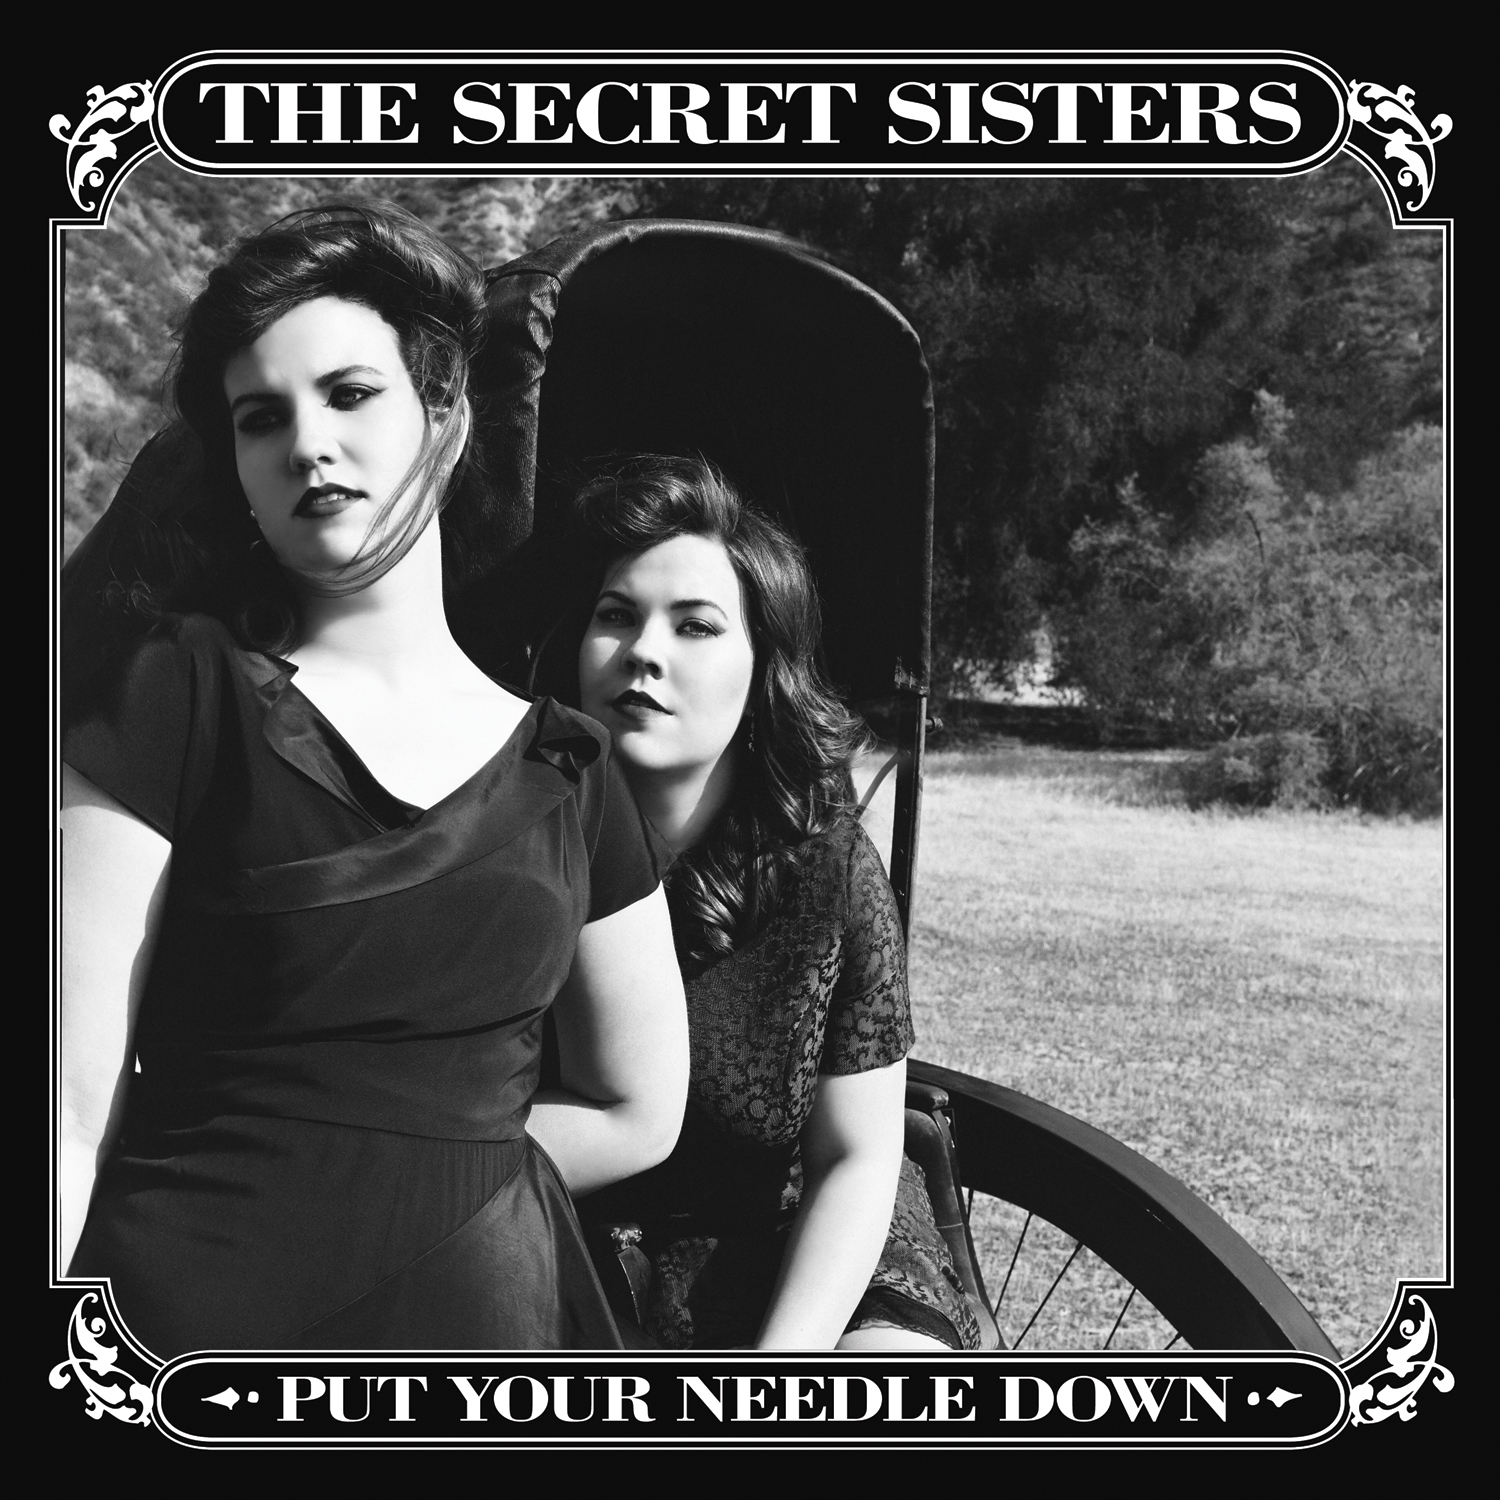 The Secret Sisters Announce New Album & Tour